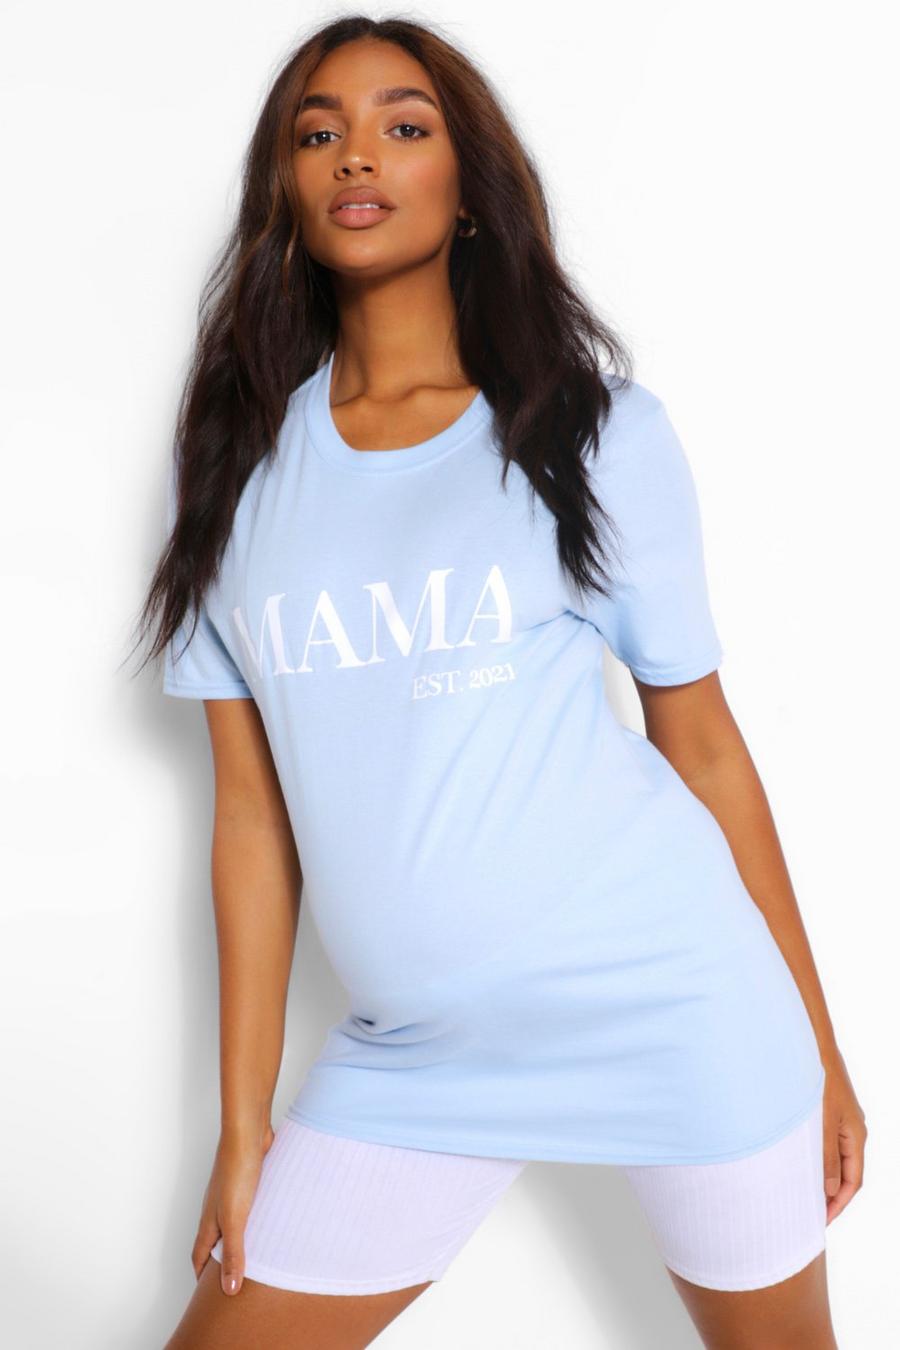 Camiseta con eslogan “Mama Est 2012” Ropa premamá, Azul pálido image number 1